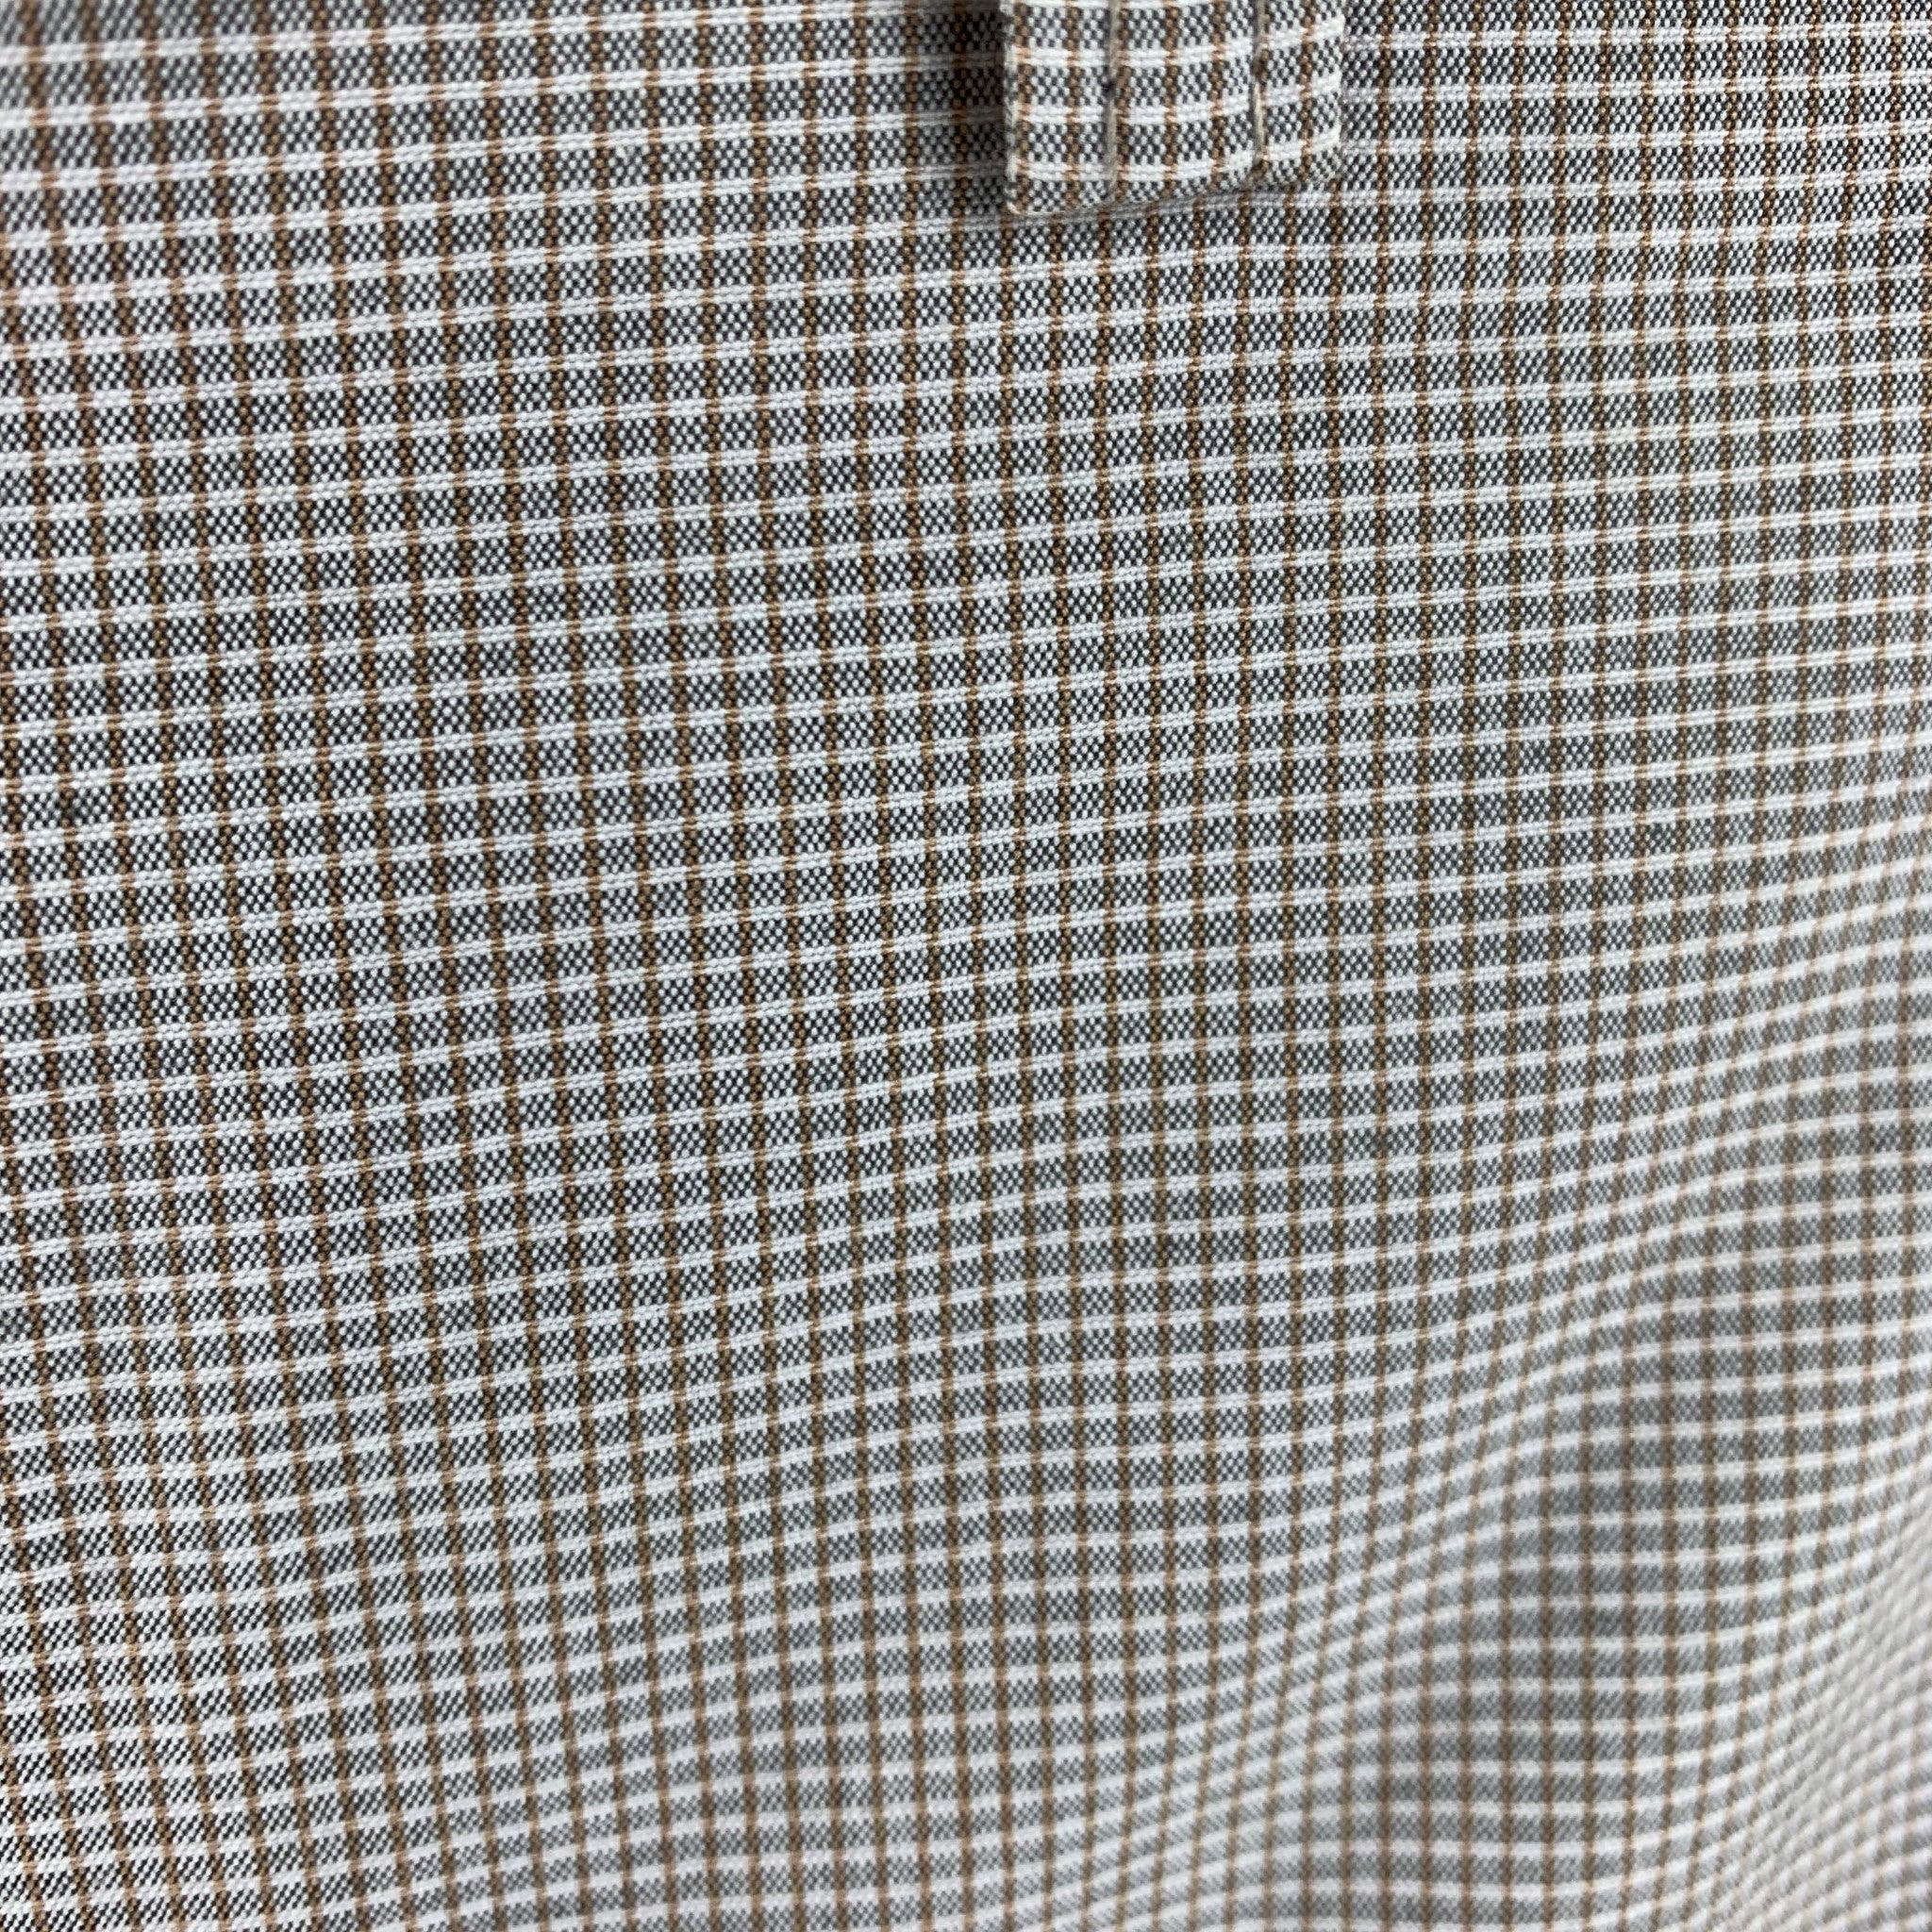 ETRO Bermudashorts aus khakifarbener Baumwolle mit Reißverschluss. Ausgezeichneter gebrauchter Zustand. 

Markiert:   32 

Abmessungen: 
  Taille: 32 Zoll Erhöhung: 10 Zoll Innennaht: 8,5 Zoll 
  
  
 
Referenz: 126421
Kategorie: Kurze Hosen
Mehr